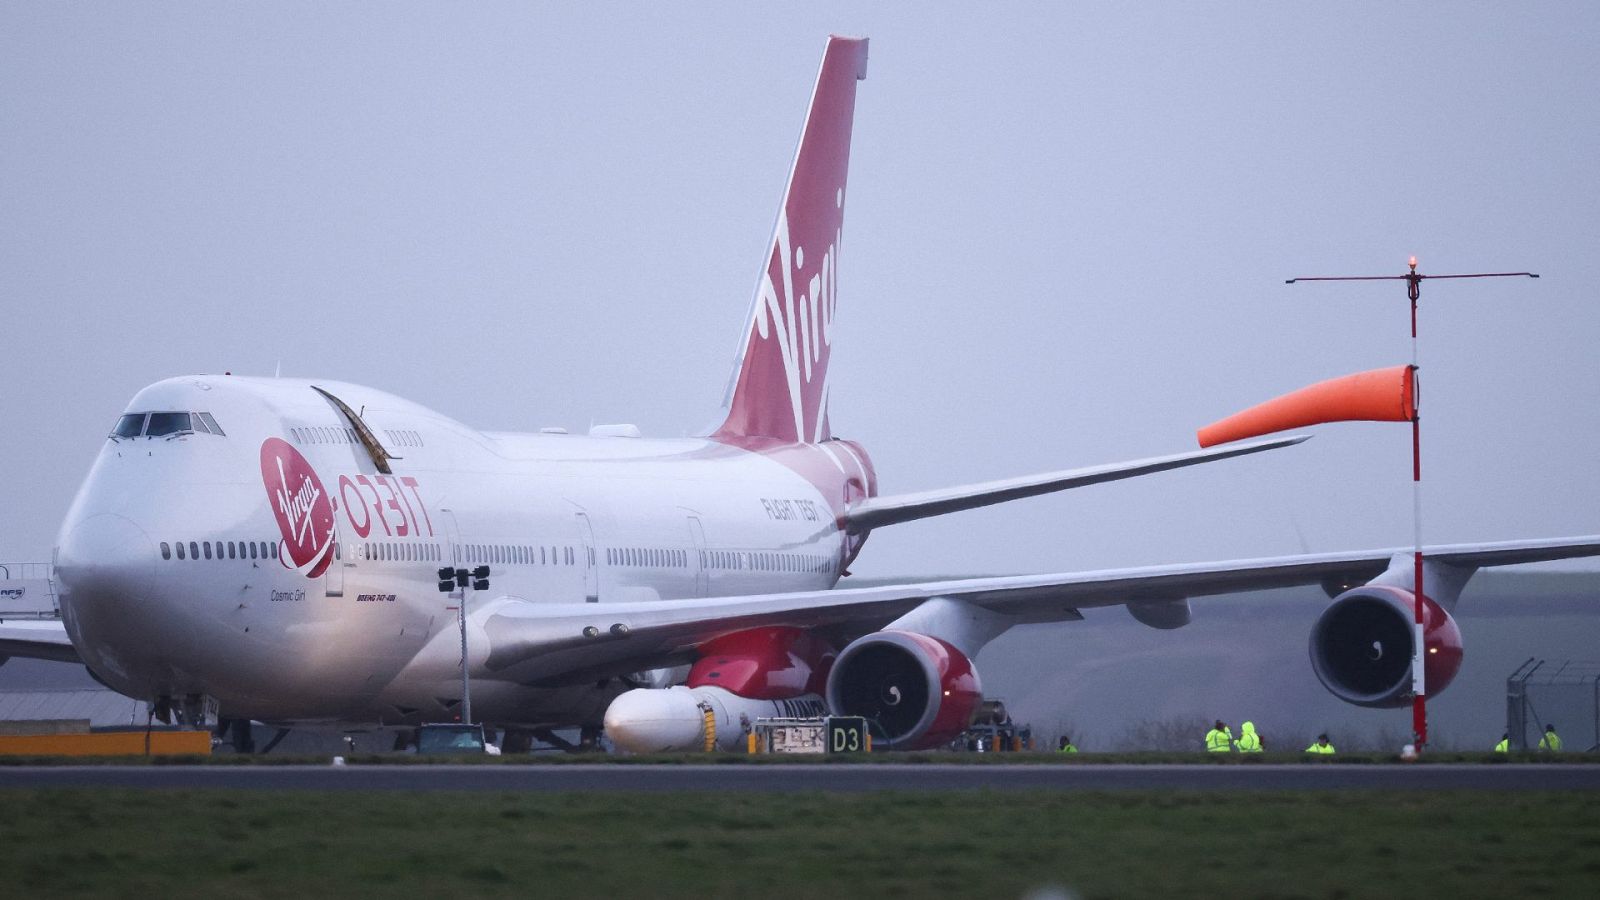 El 'Cosmic Girl', un avión Boeing 747-400 de Virgin, se sienta en la pista con el cohete LauncherOne acoplado al ala, en Gran Bretaña.